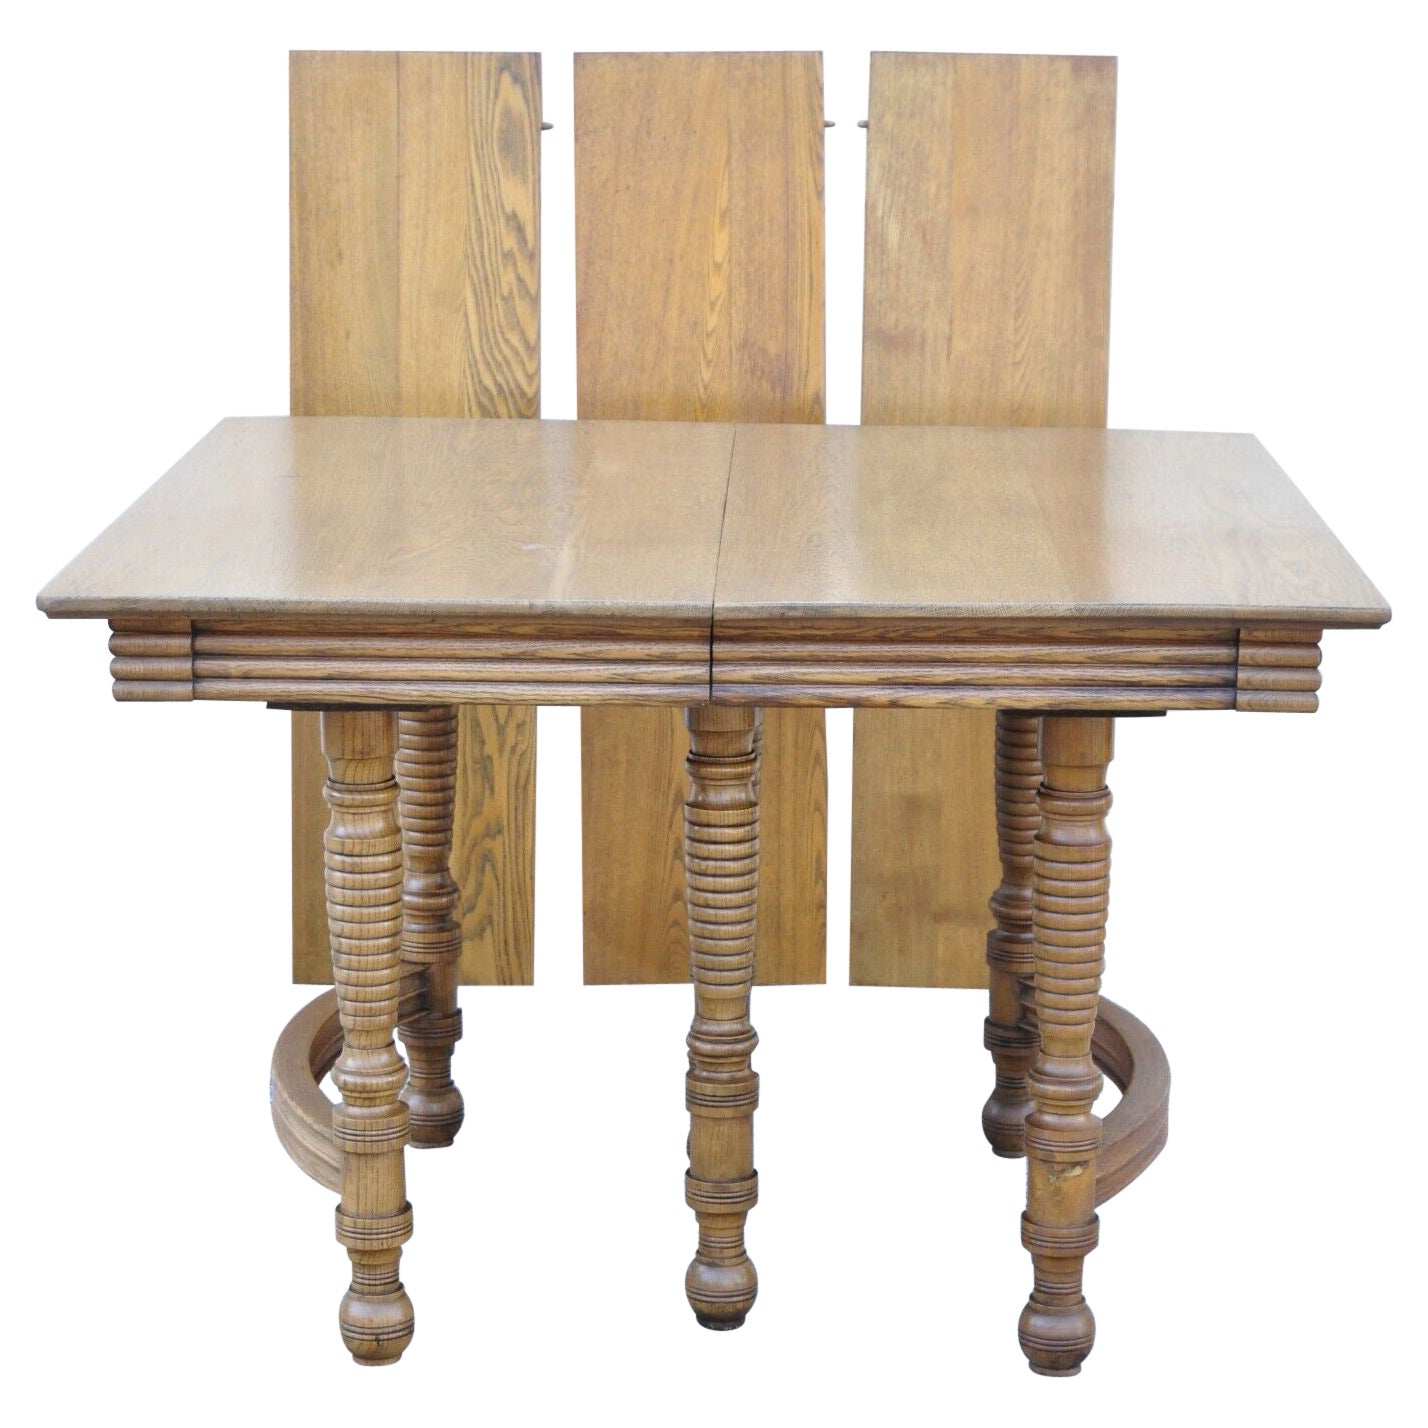 Ancienne table de salle à manger américaine victorienne carrée à rallonge en bois de chêne avec 3 feuilles